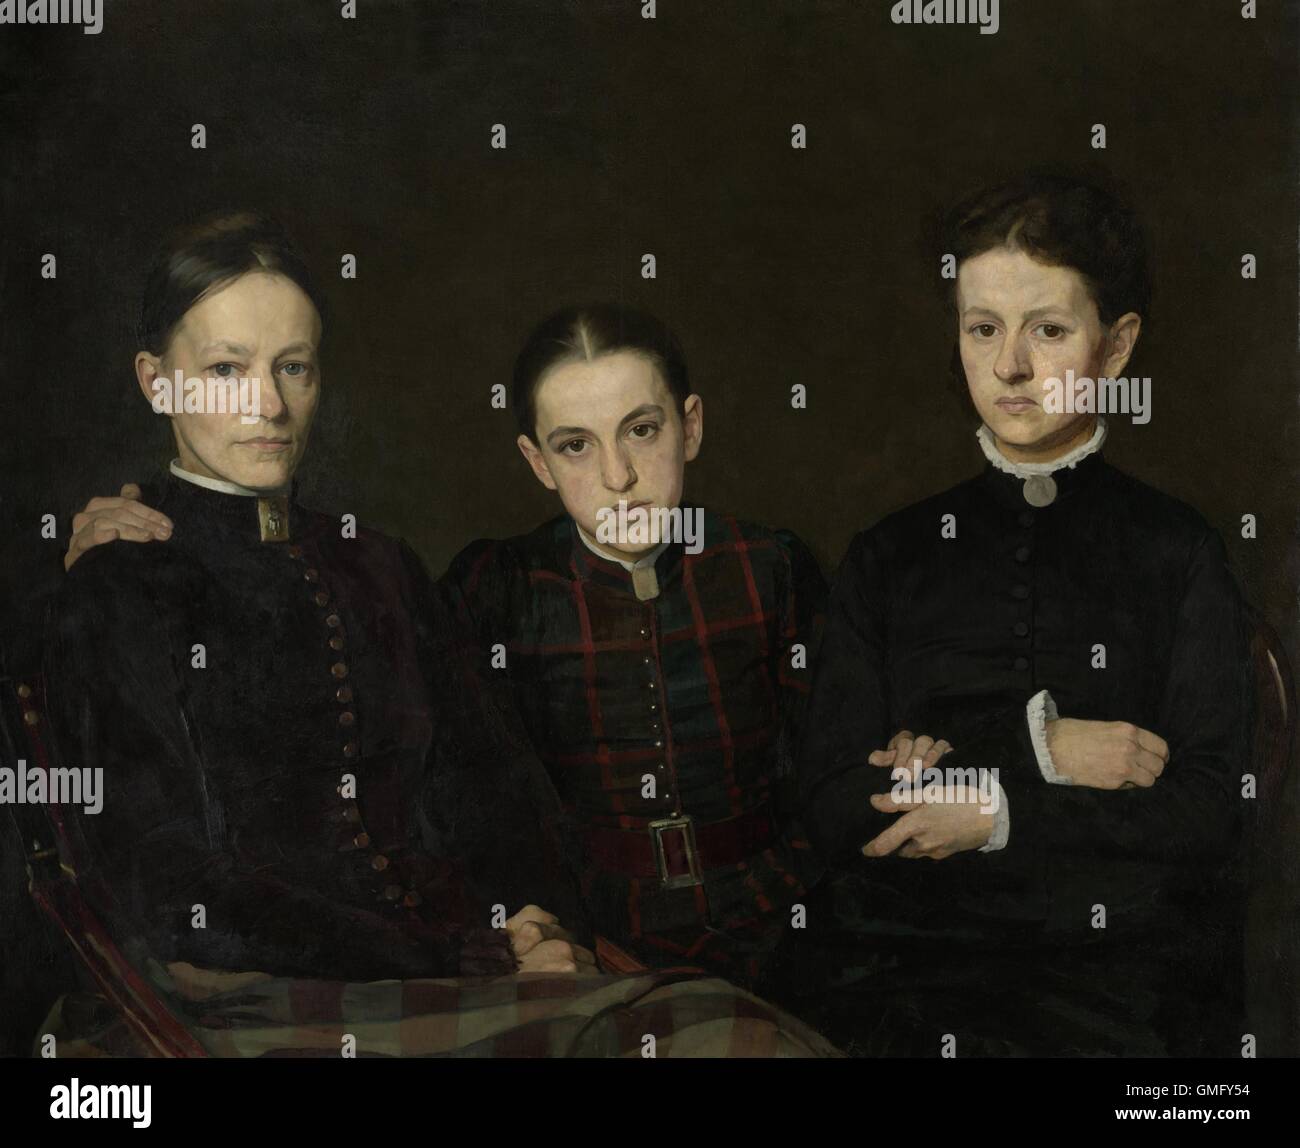 Porträt von Cornelia, Clara und Johanna Veth, von Jan Veth, 1885, niederländische Malerei, Öl auf Leinwand. Drei Schwestern des Künstlers wurden mit wenig schmeichelhaften Realismus dargestellt Ehrlichkeit (BSLOC 2016 2 87) Stockfoto